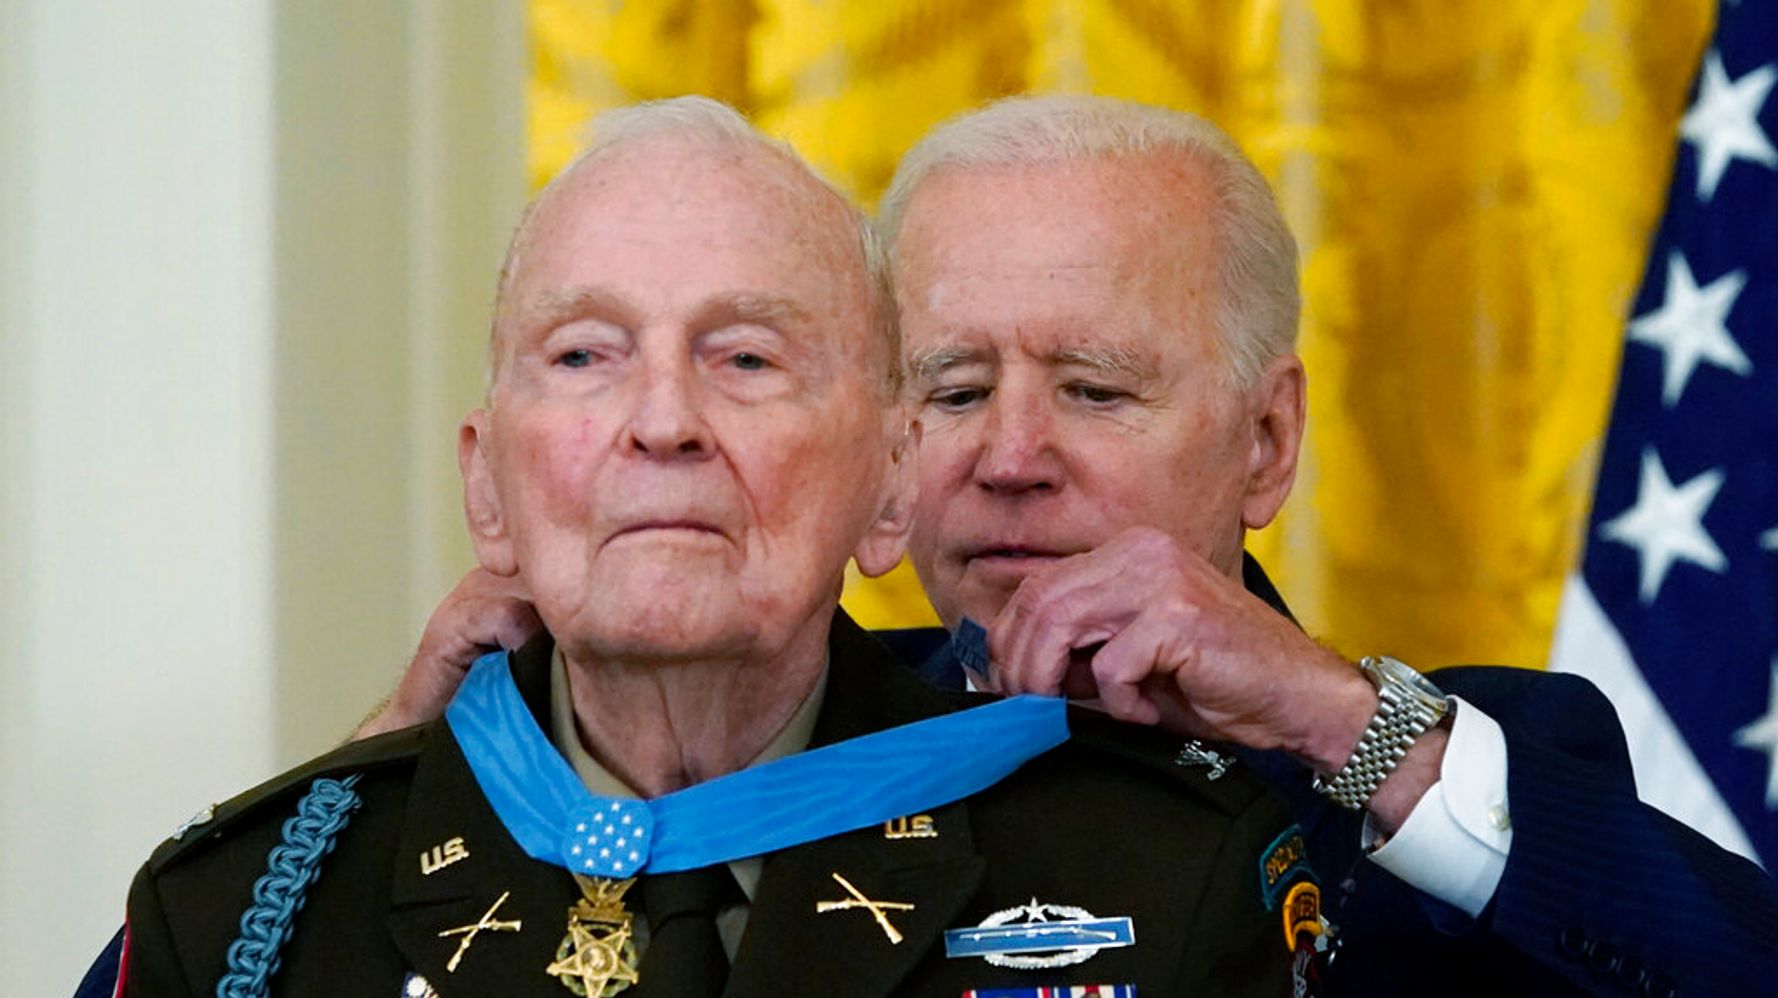 Biden Bestows Medal Of Honor On 94-Year-Old Korean War Veteran